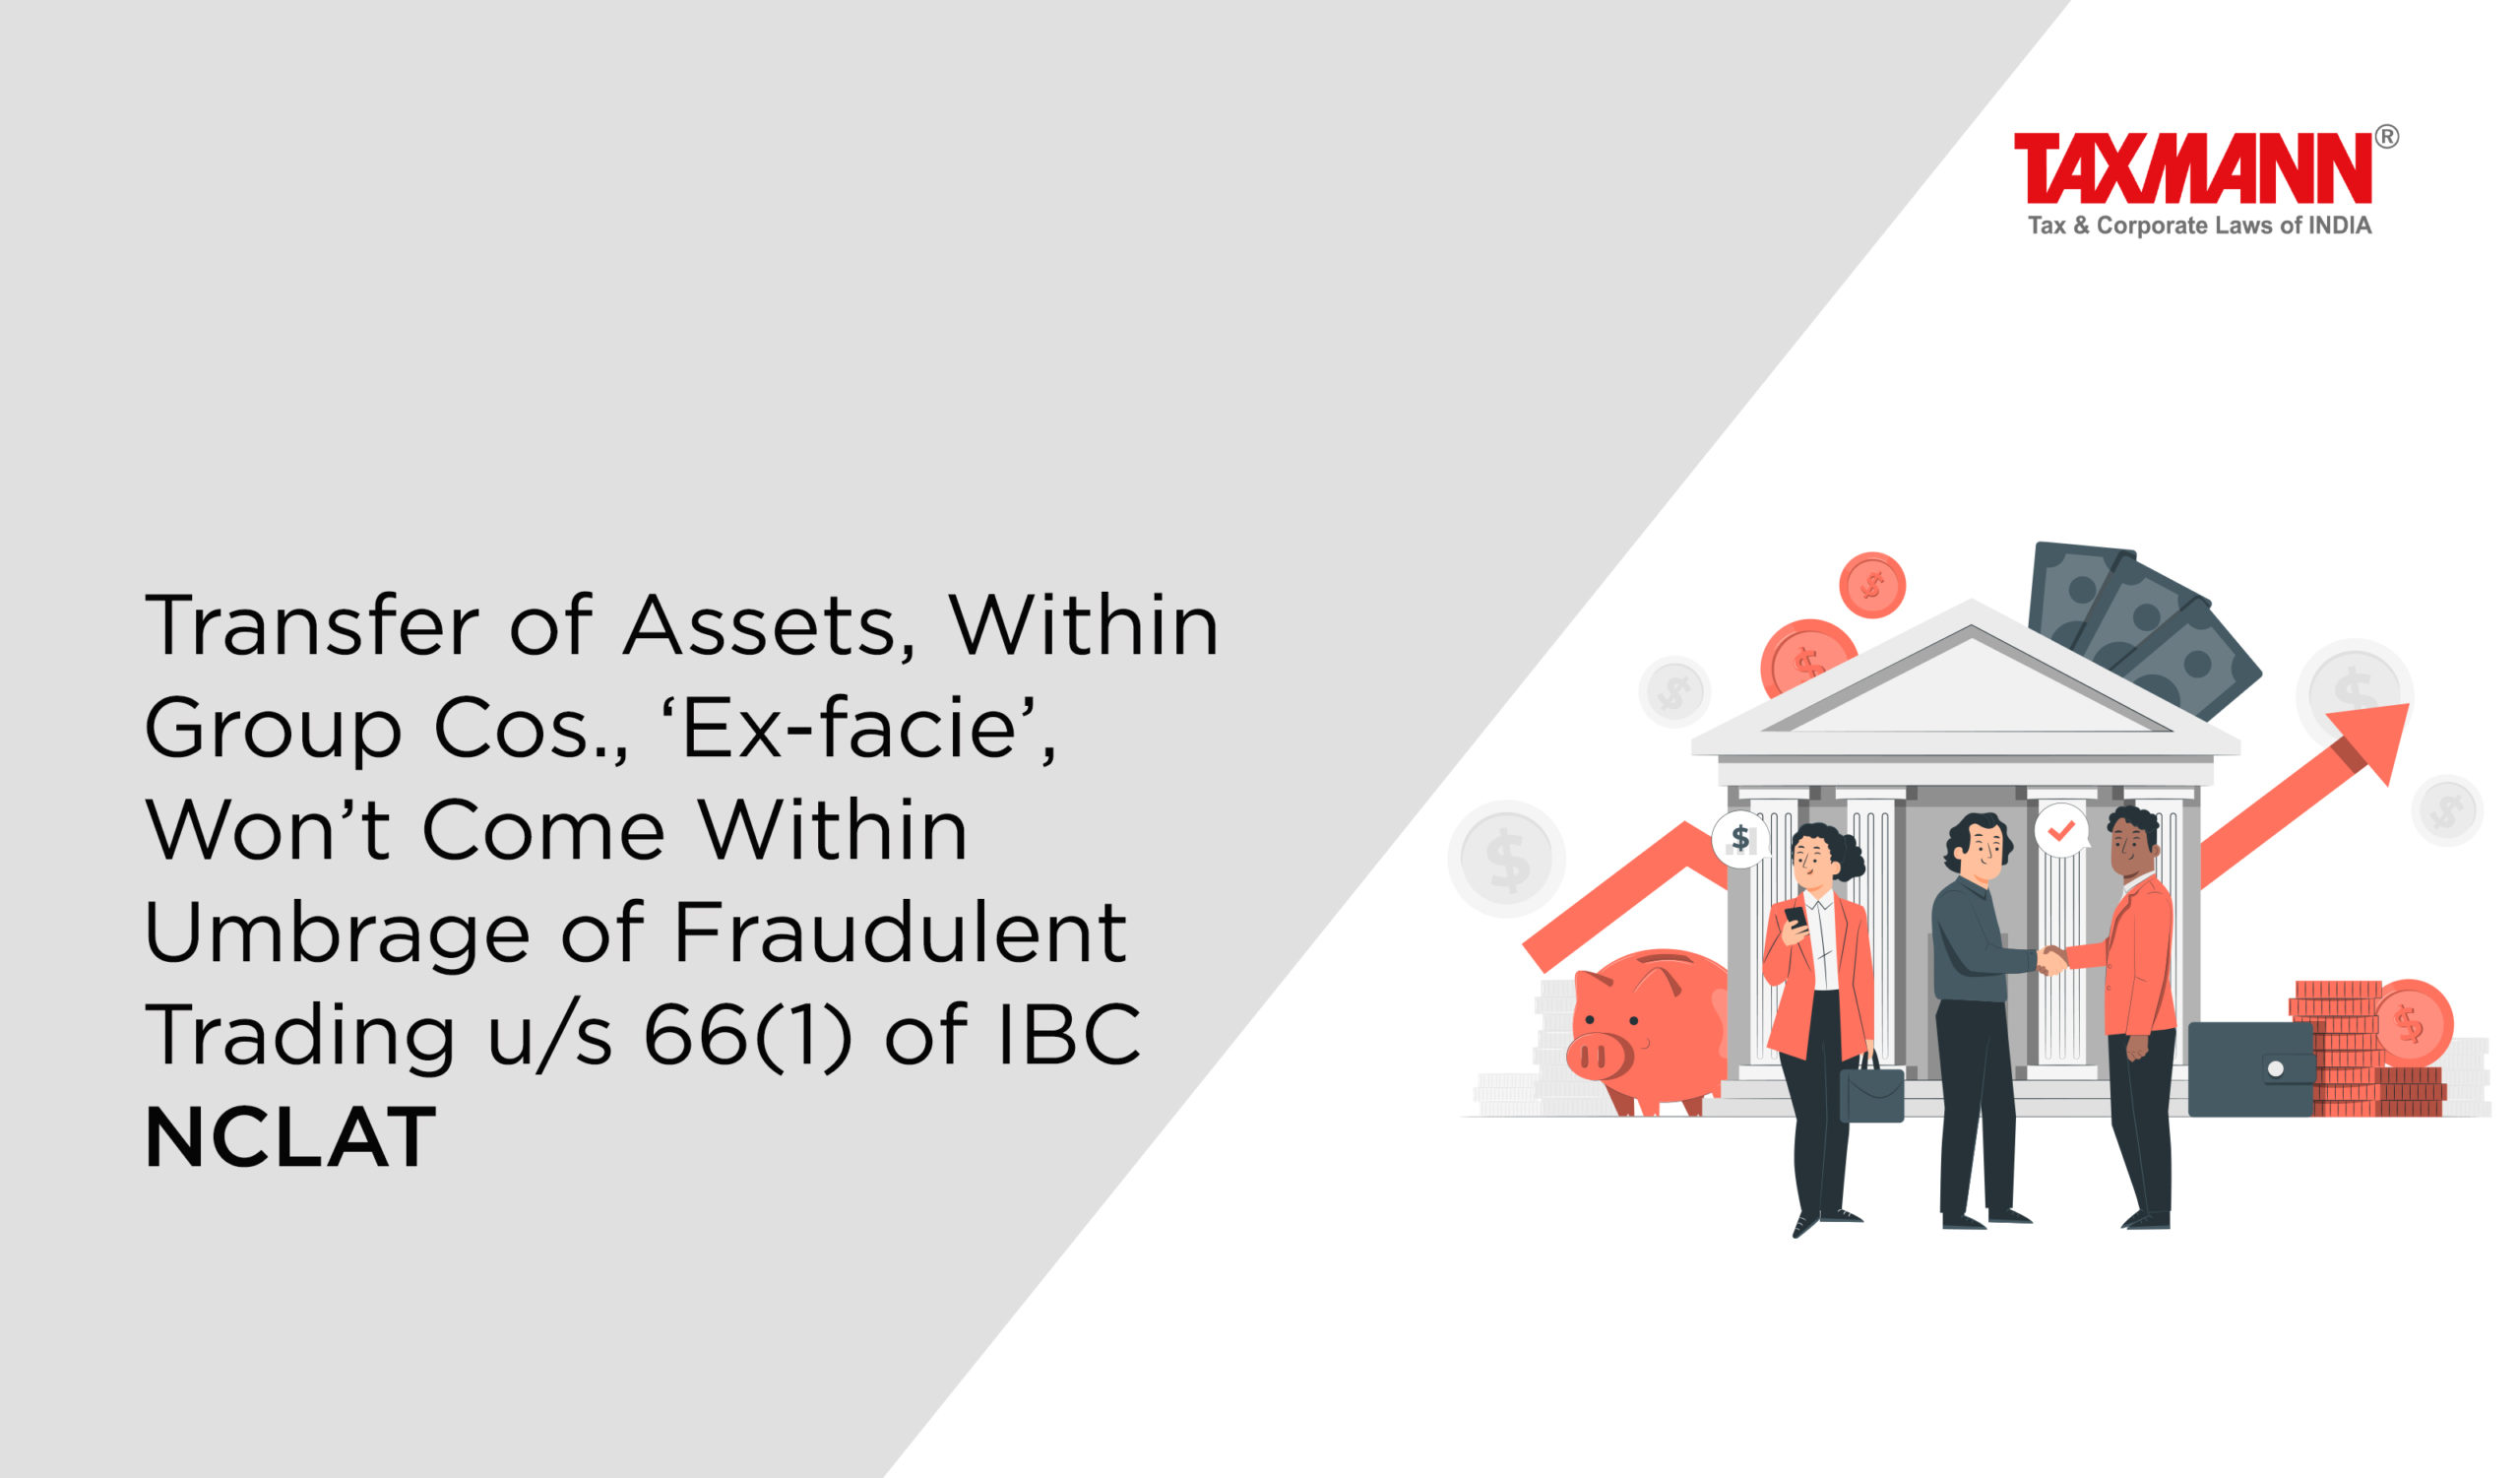 Fraudulent trading u/s 66(1) of IBC